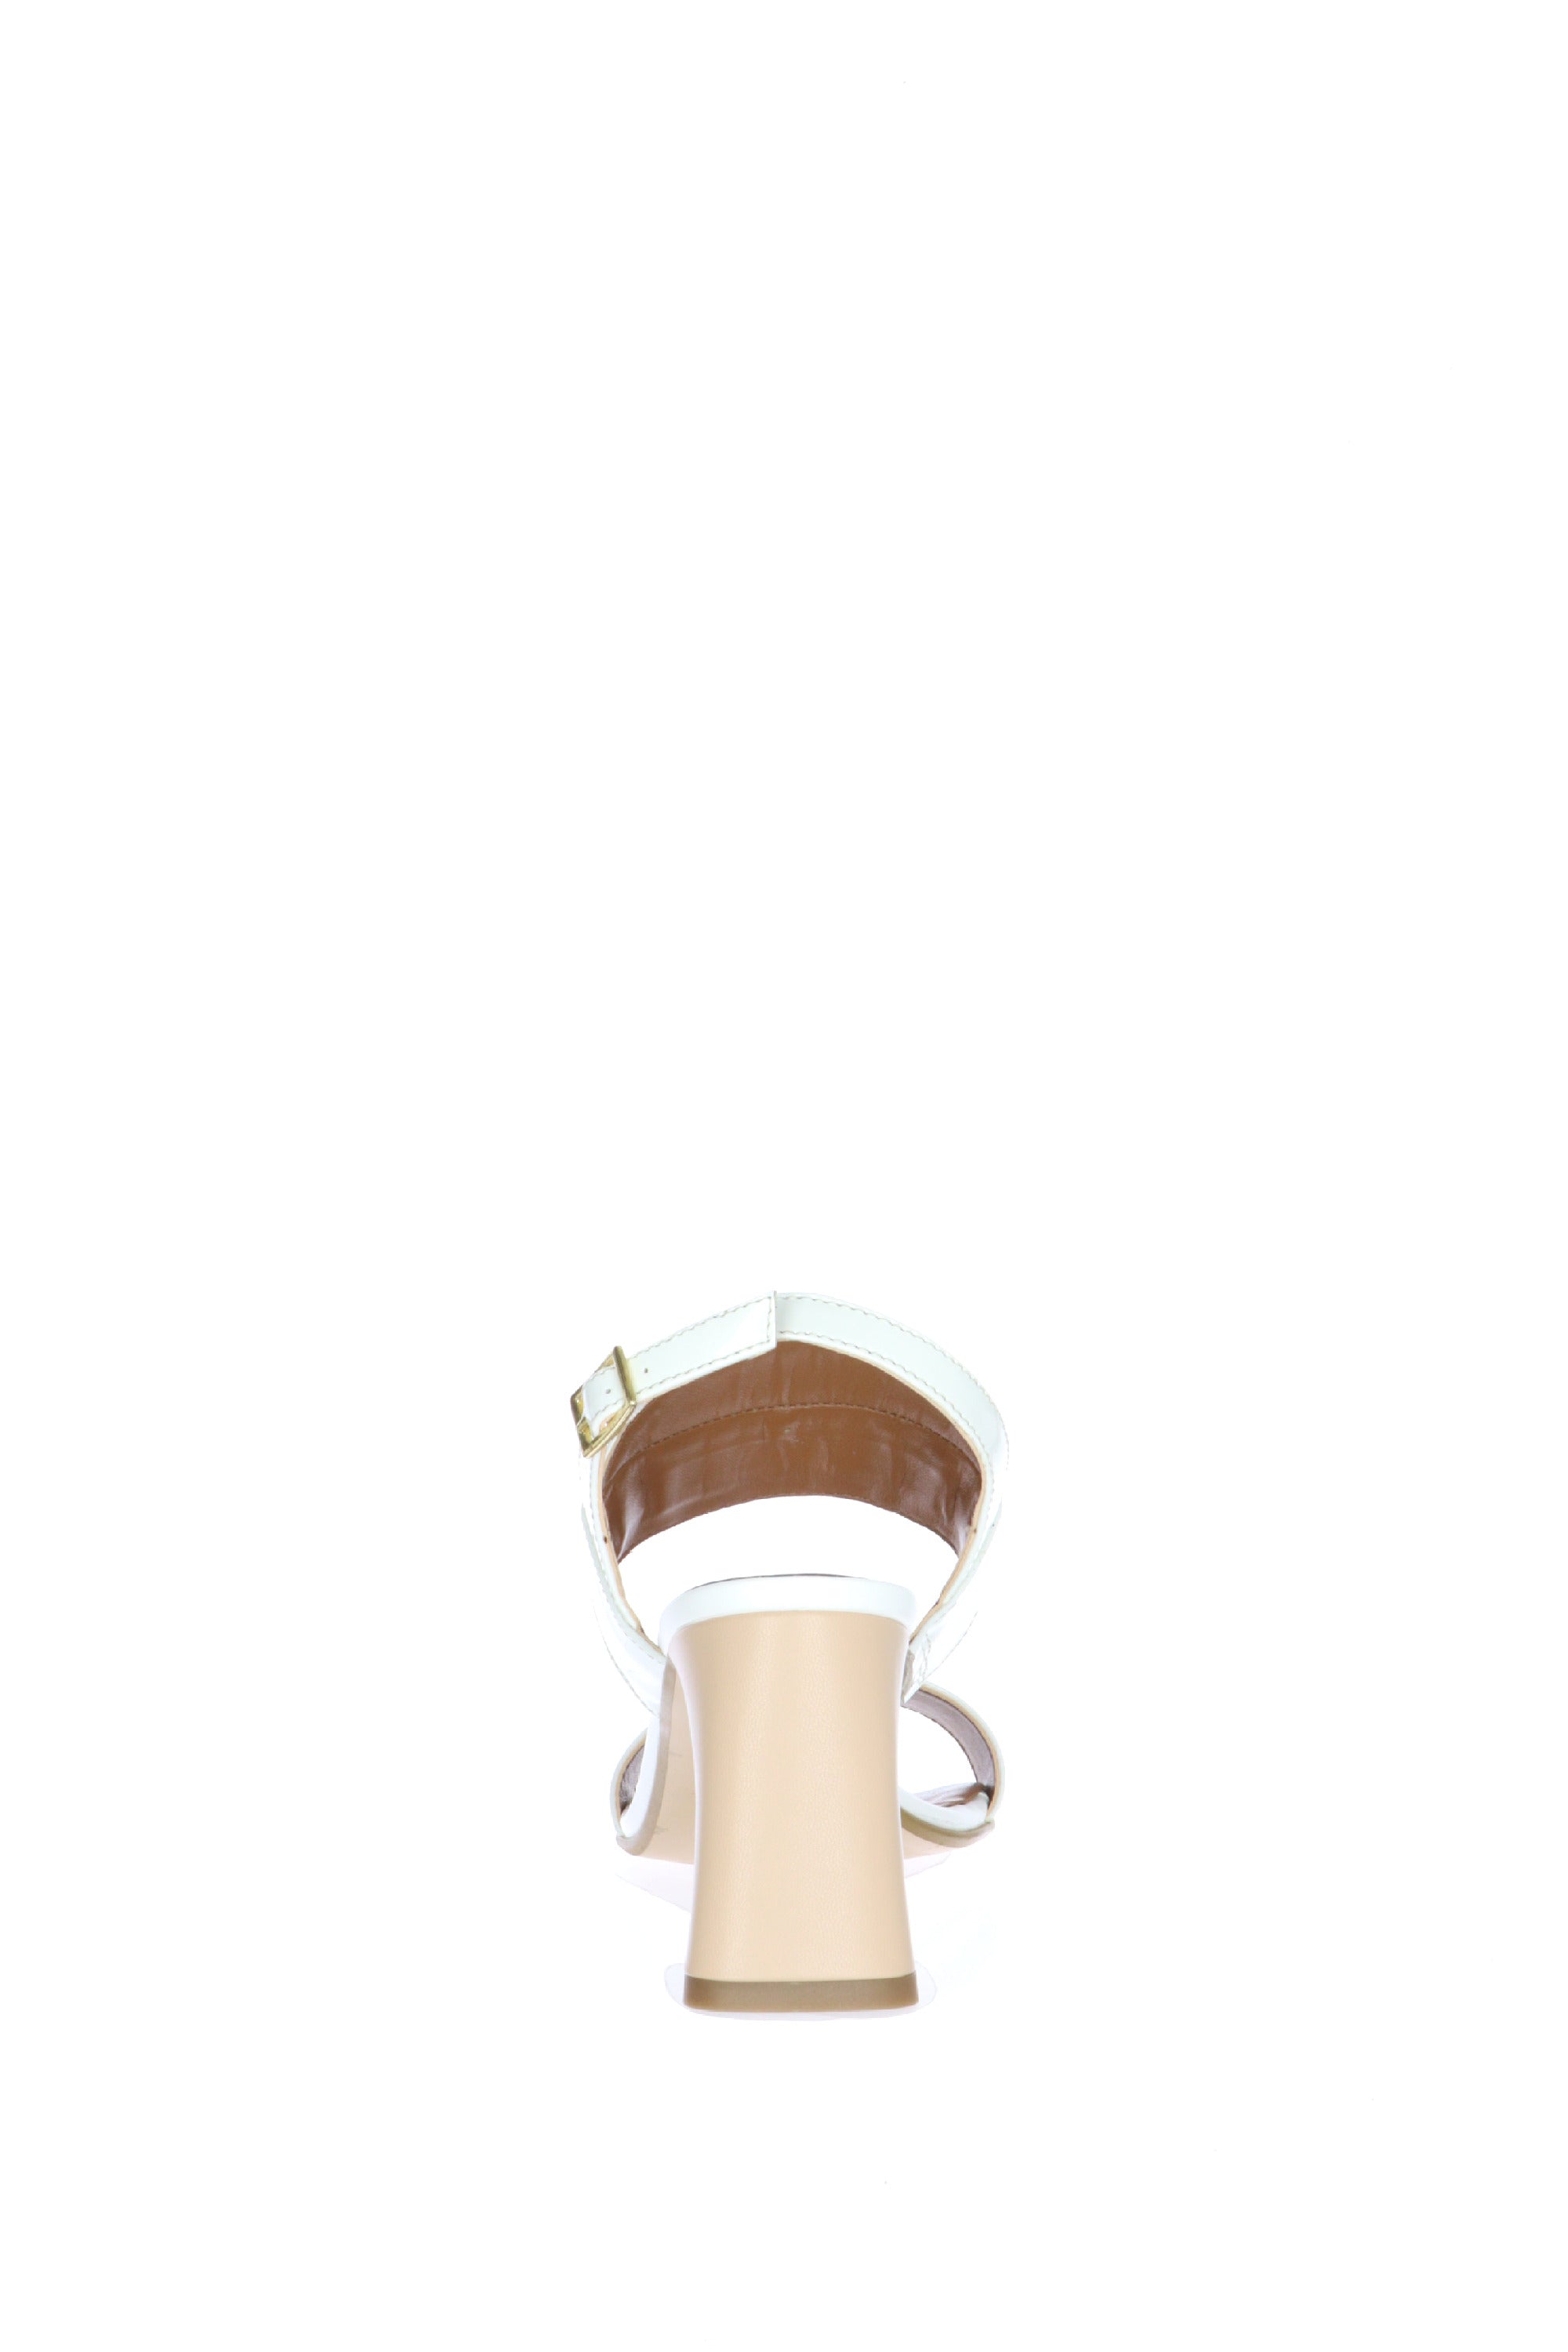 Sandalo due fasce nero o  bianco  con accessorio catena Cinzia Soft